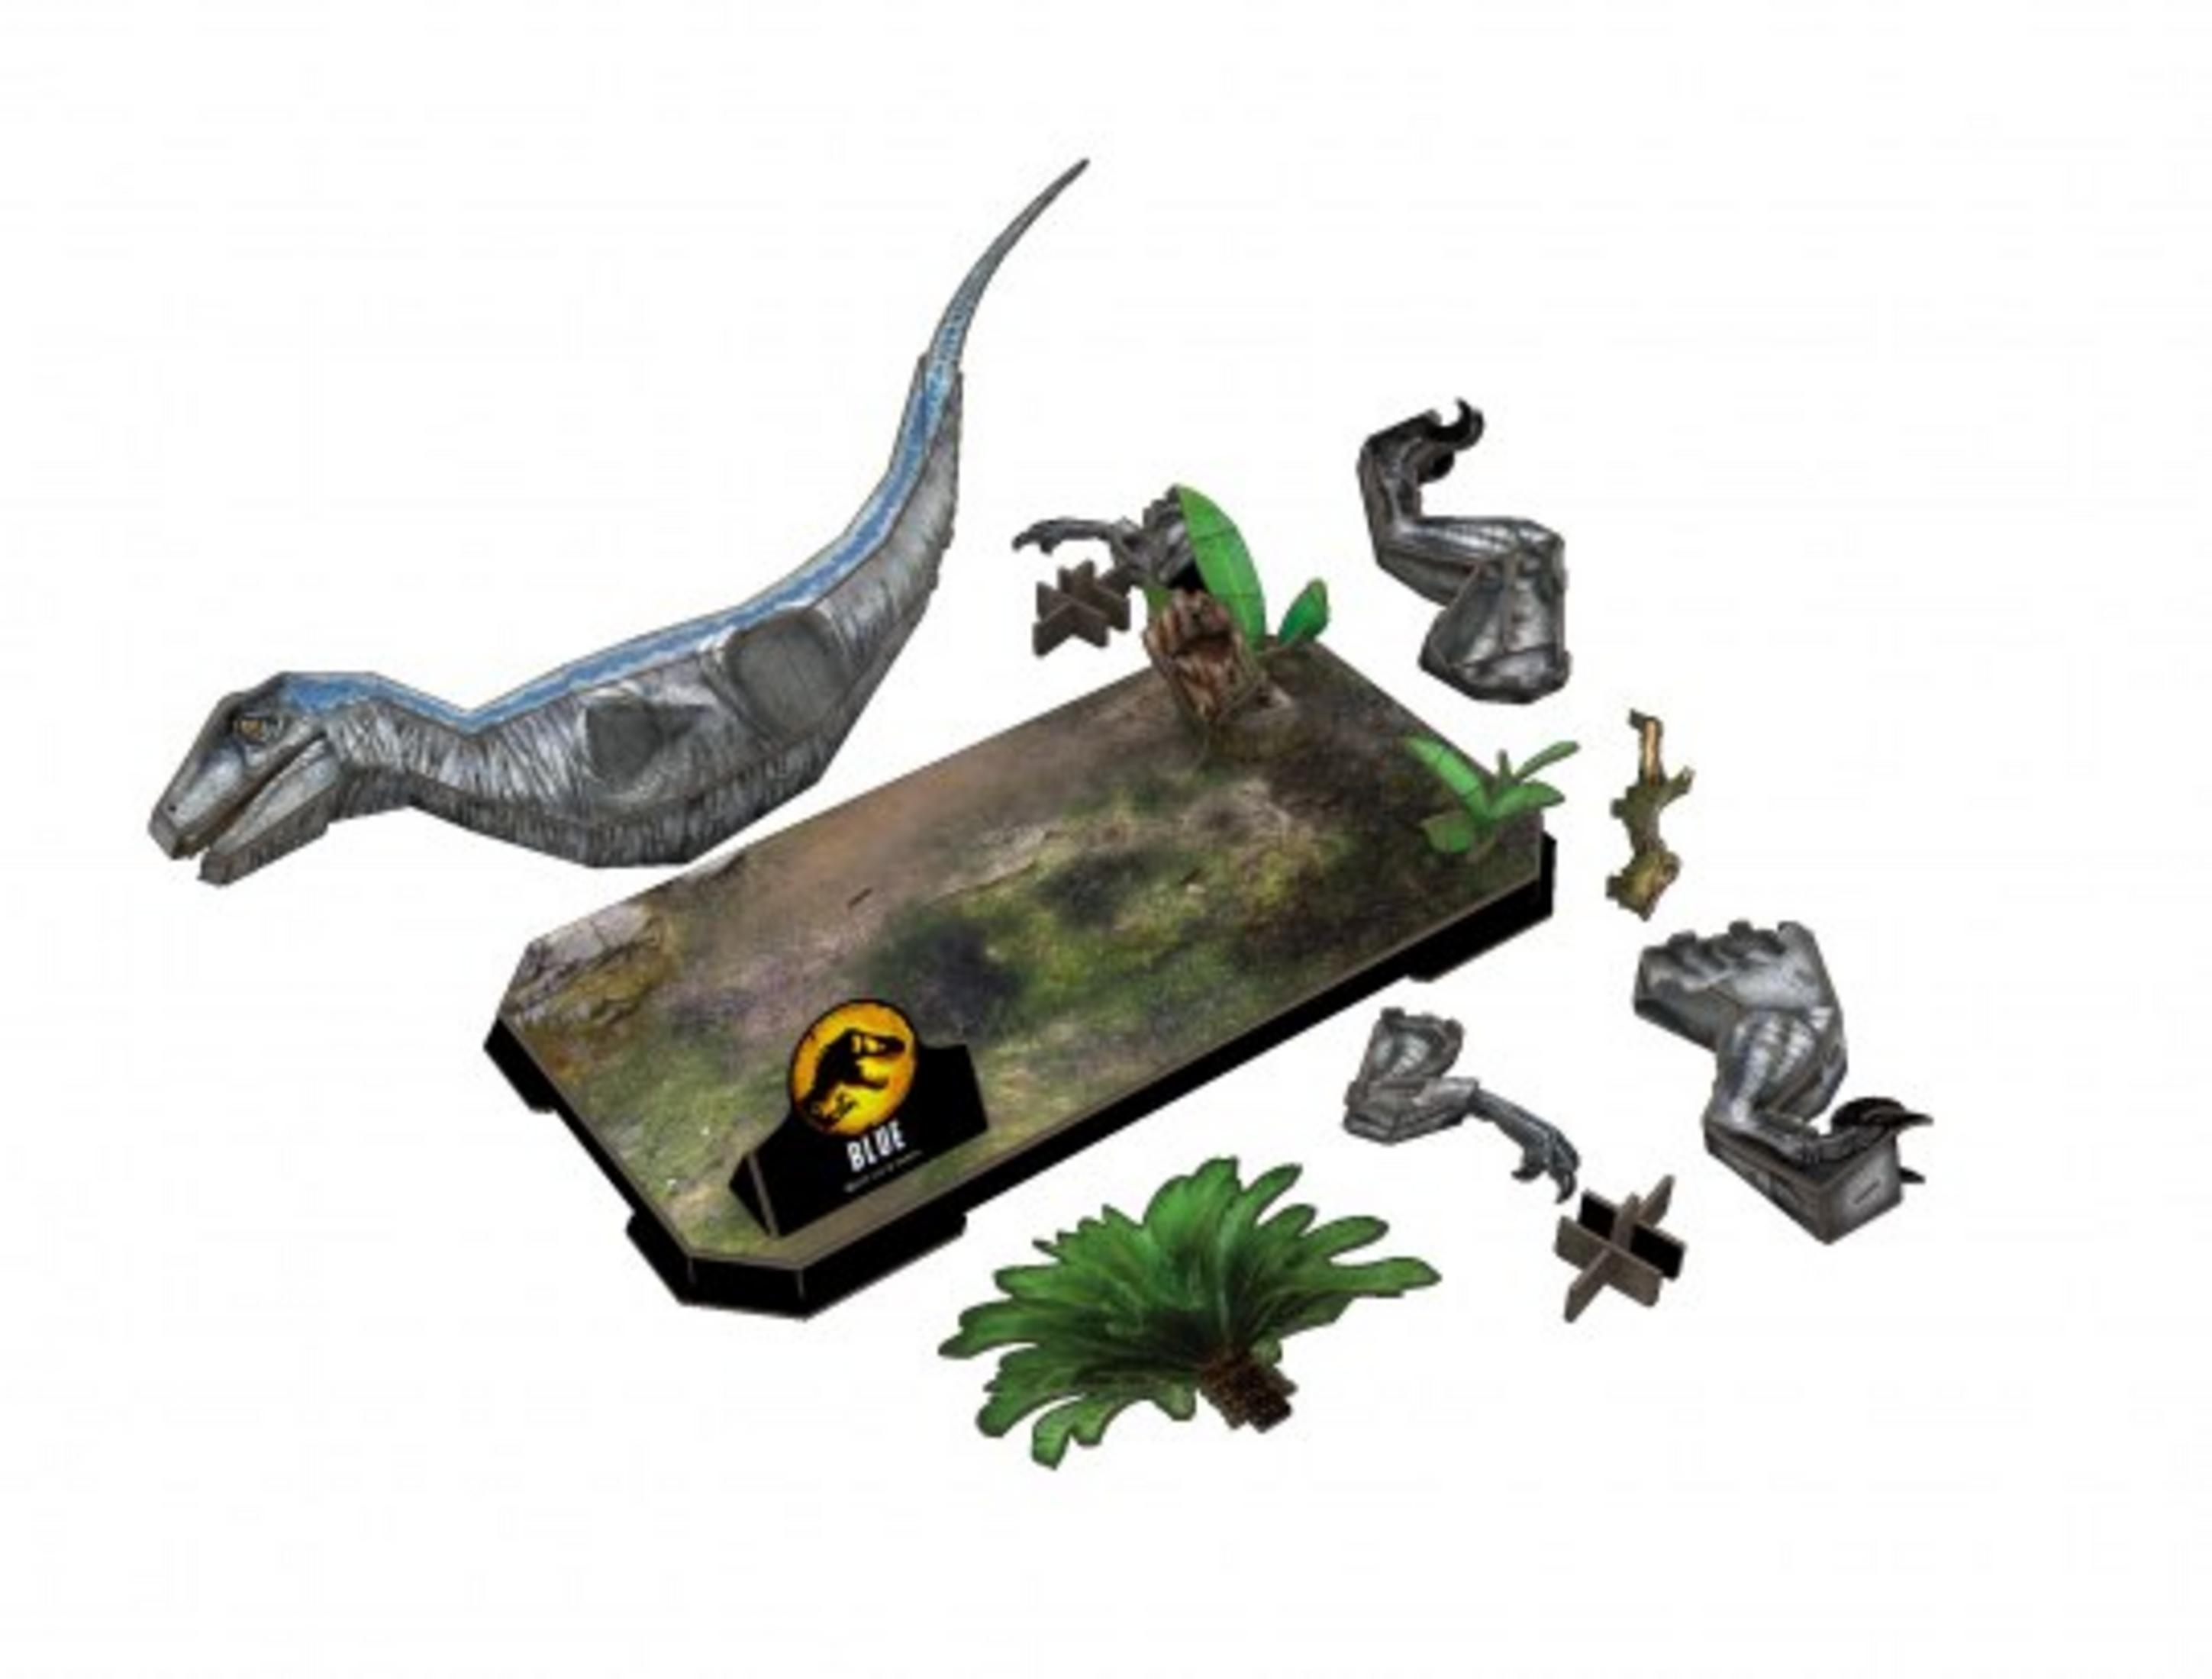 neues Puzzle World: 3D Ein Zeitalter Blue REVELL Jurassic Puzzle 3D